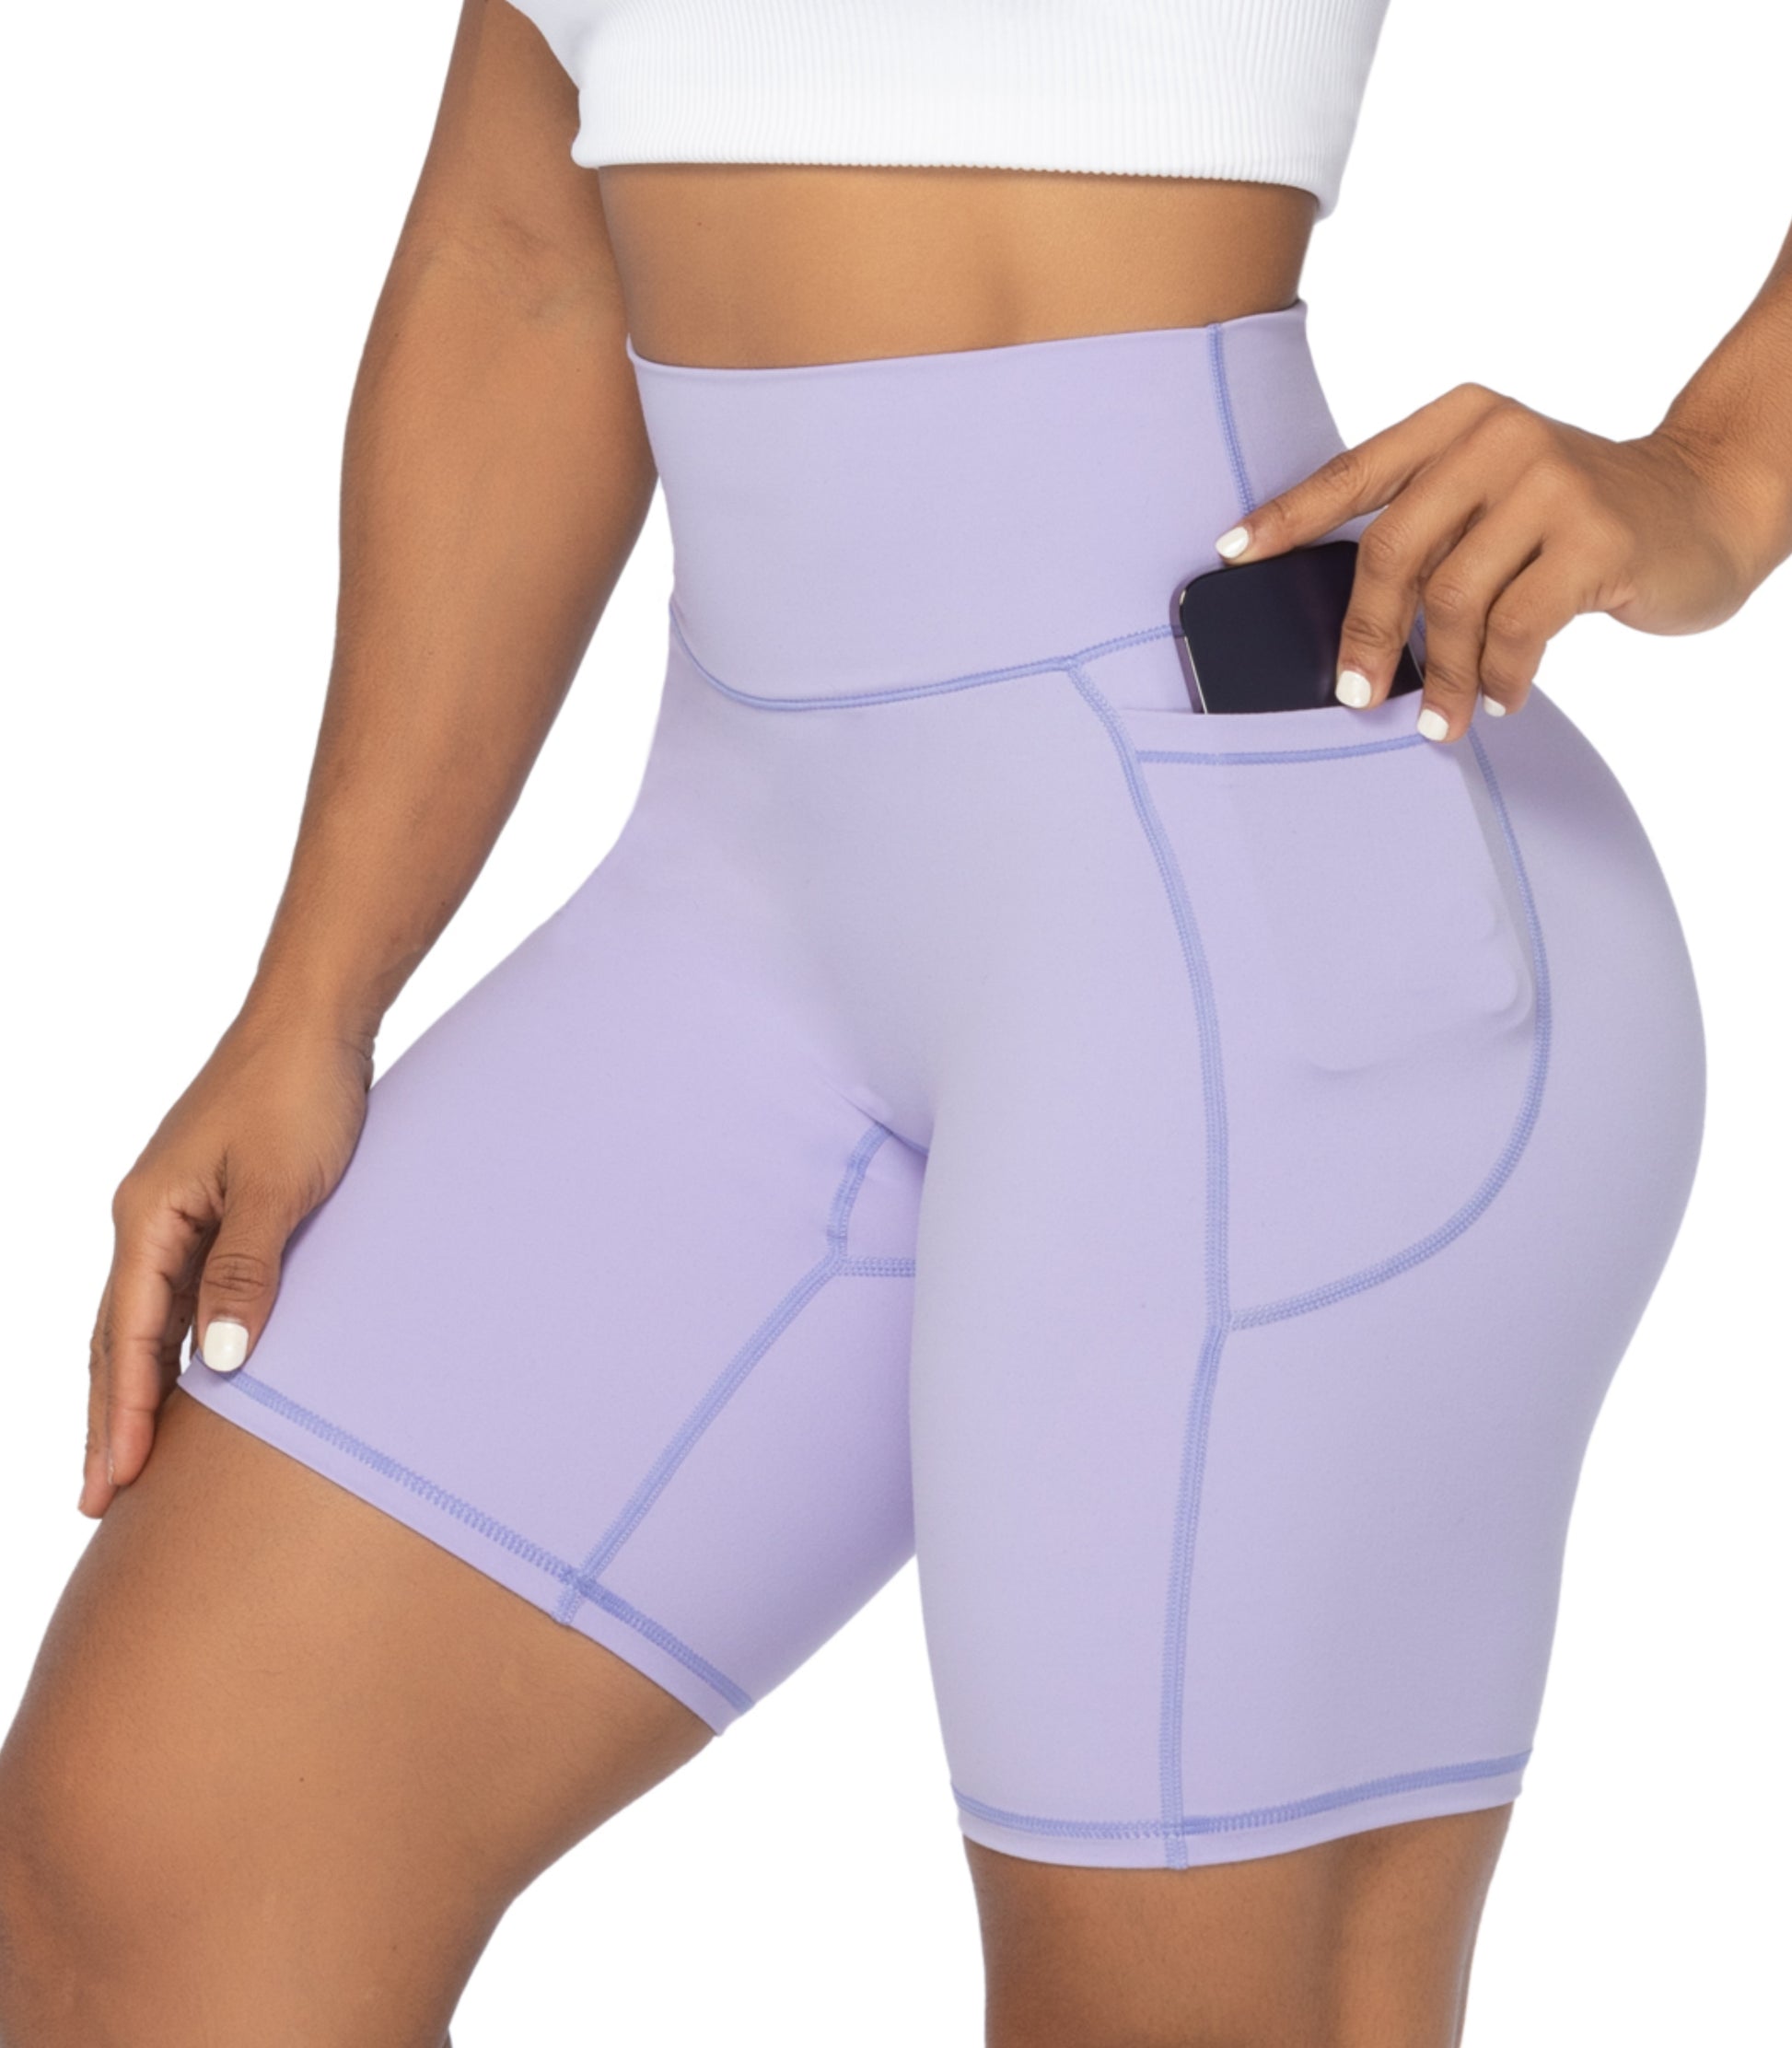 Sunzel Women's Biker Shorts in High Waist Tummy Control with No Front Seam